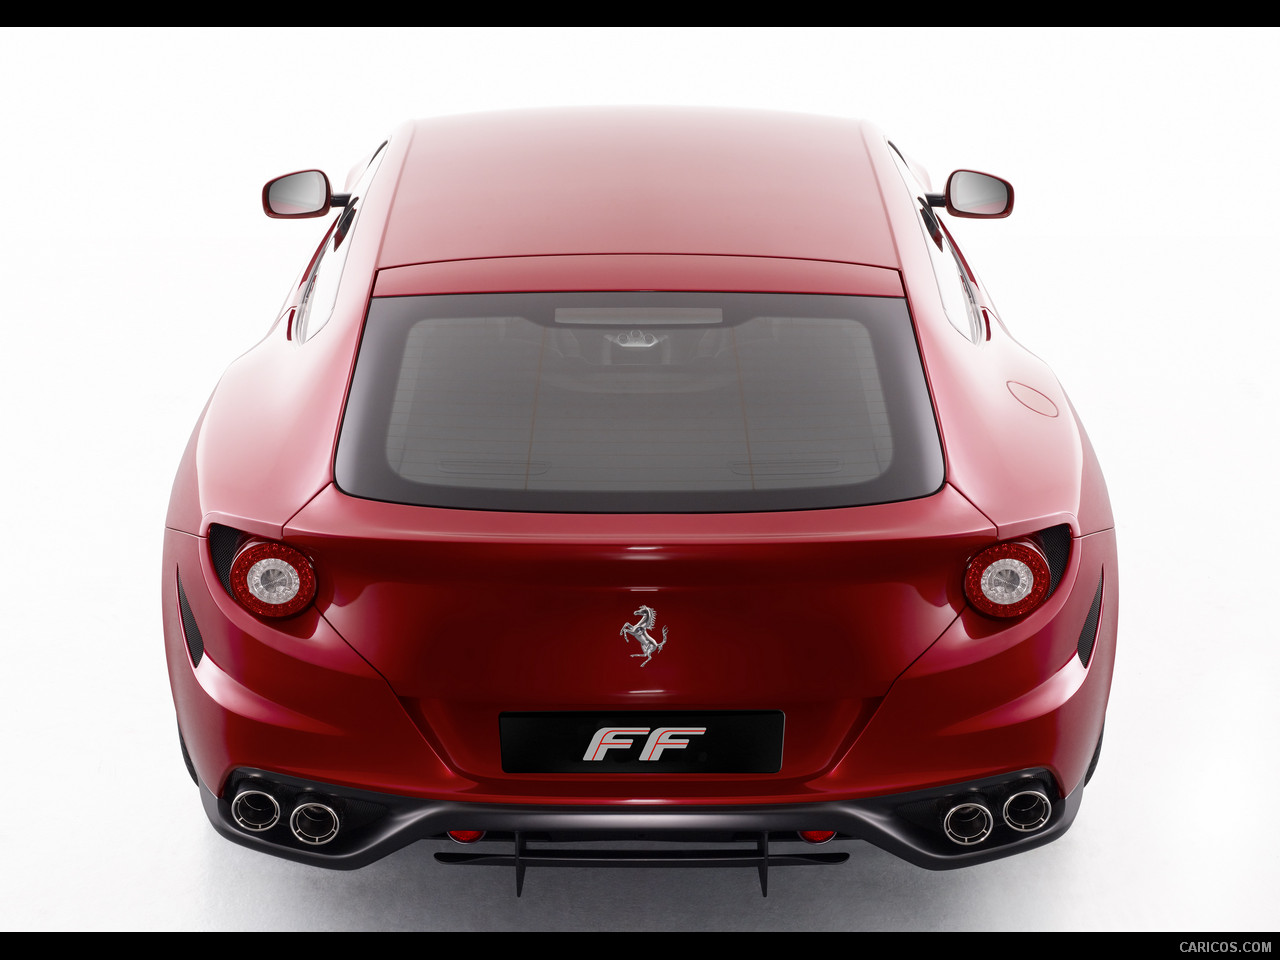 Ferrari FF Rear 1280x960 92 of 123